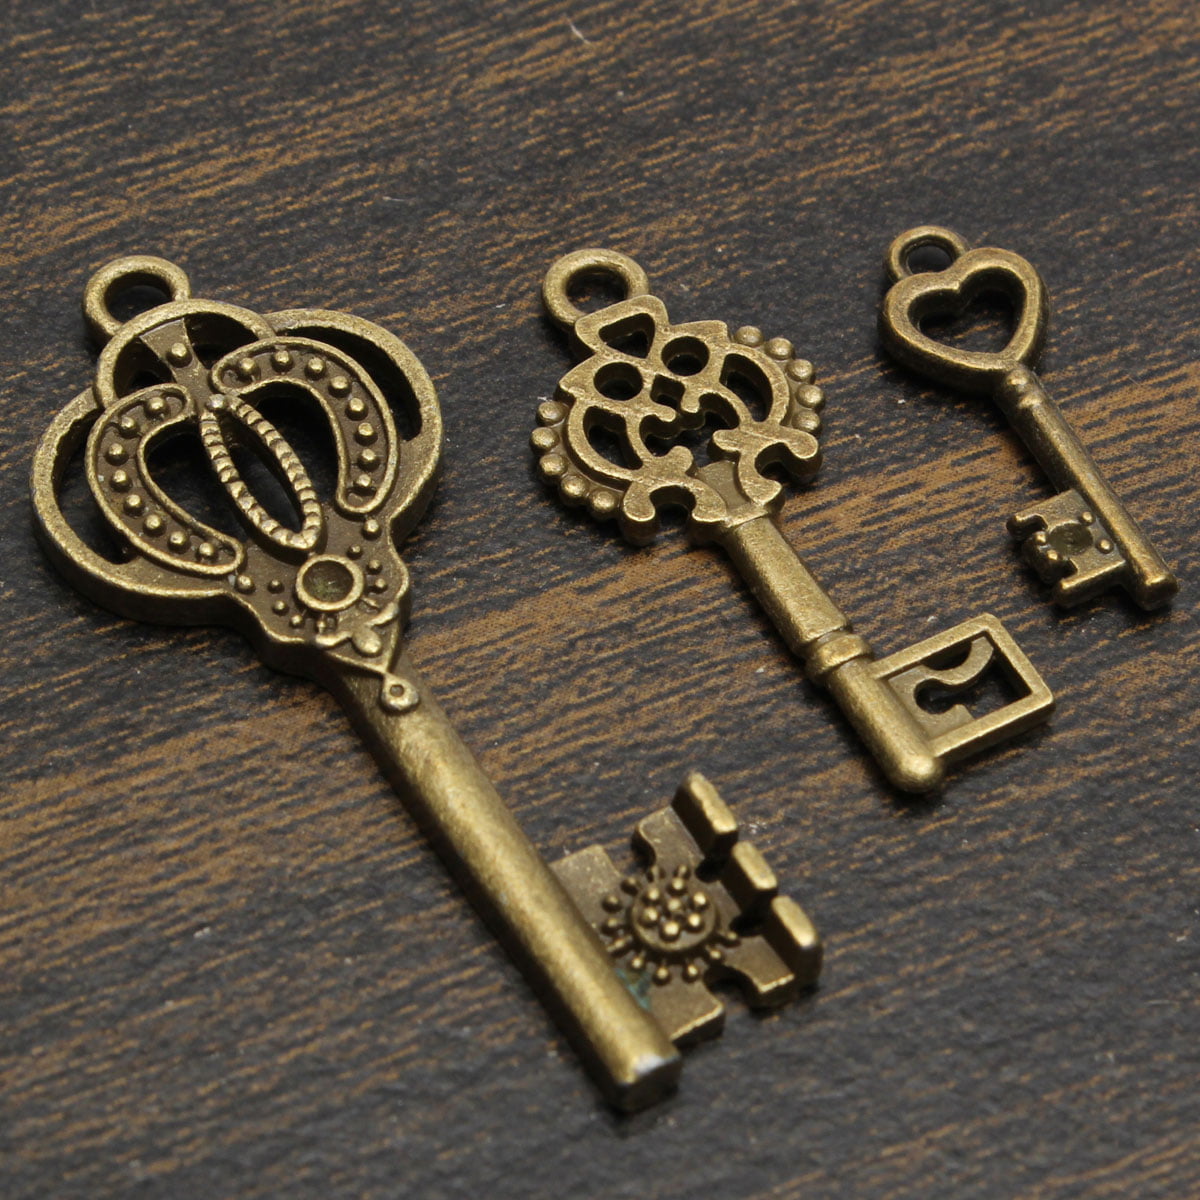 13Pcs Antique Vintage VTG Old Look Skeleton Keys Bronze Steampunk Pendants